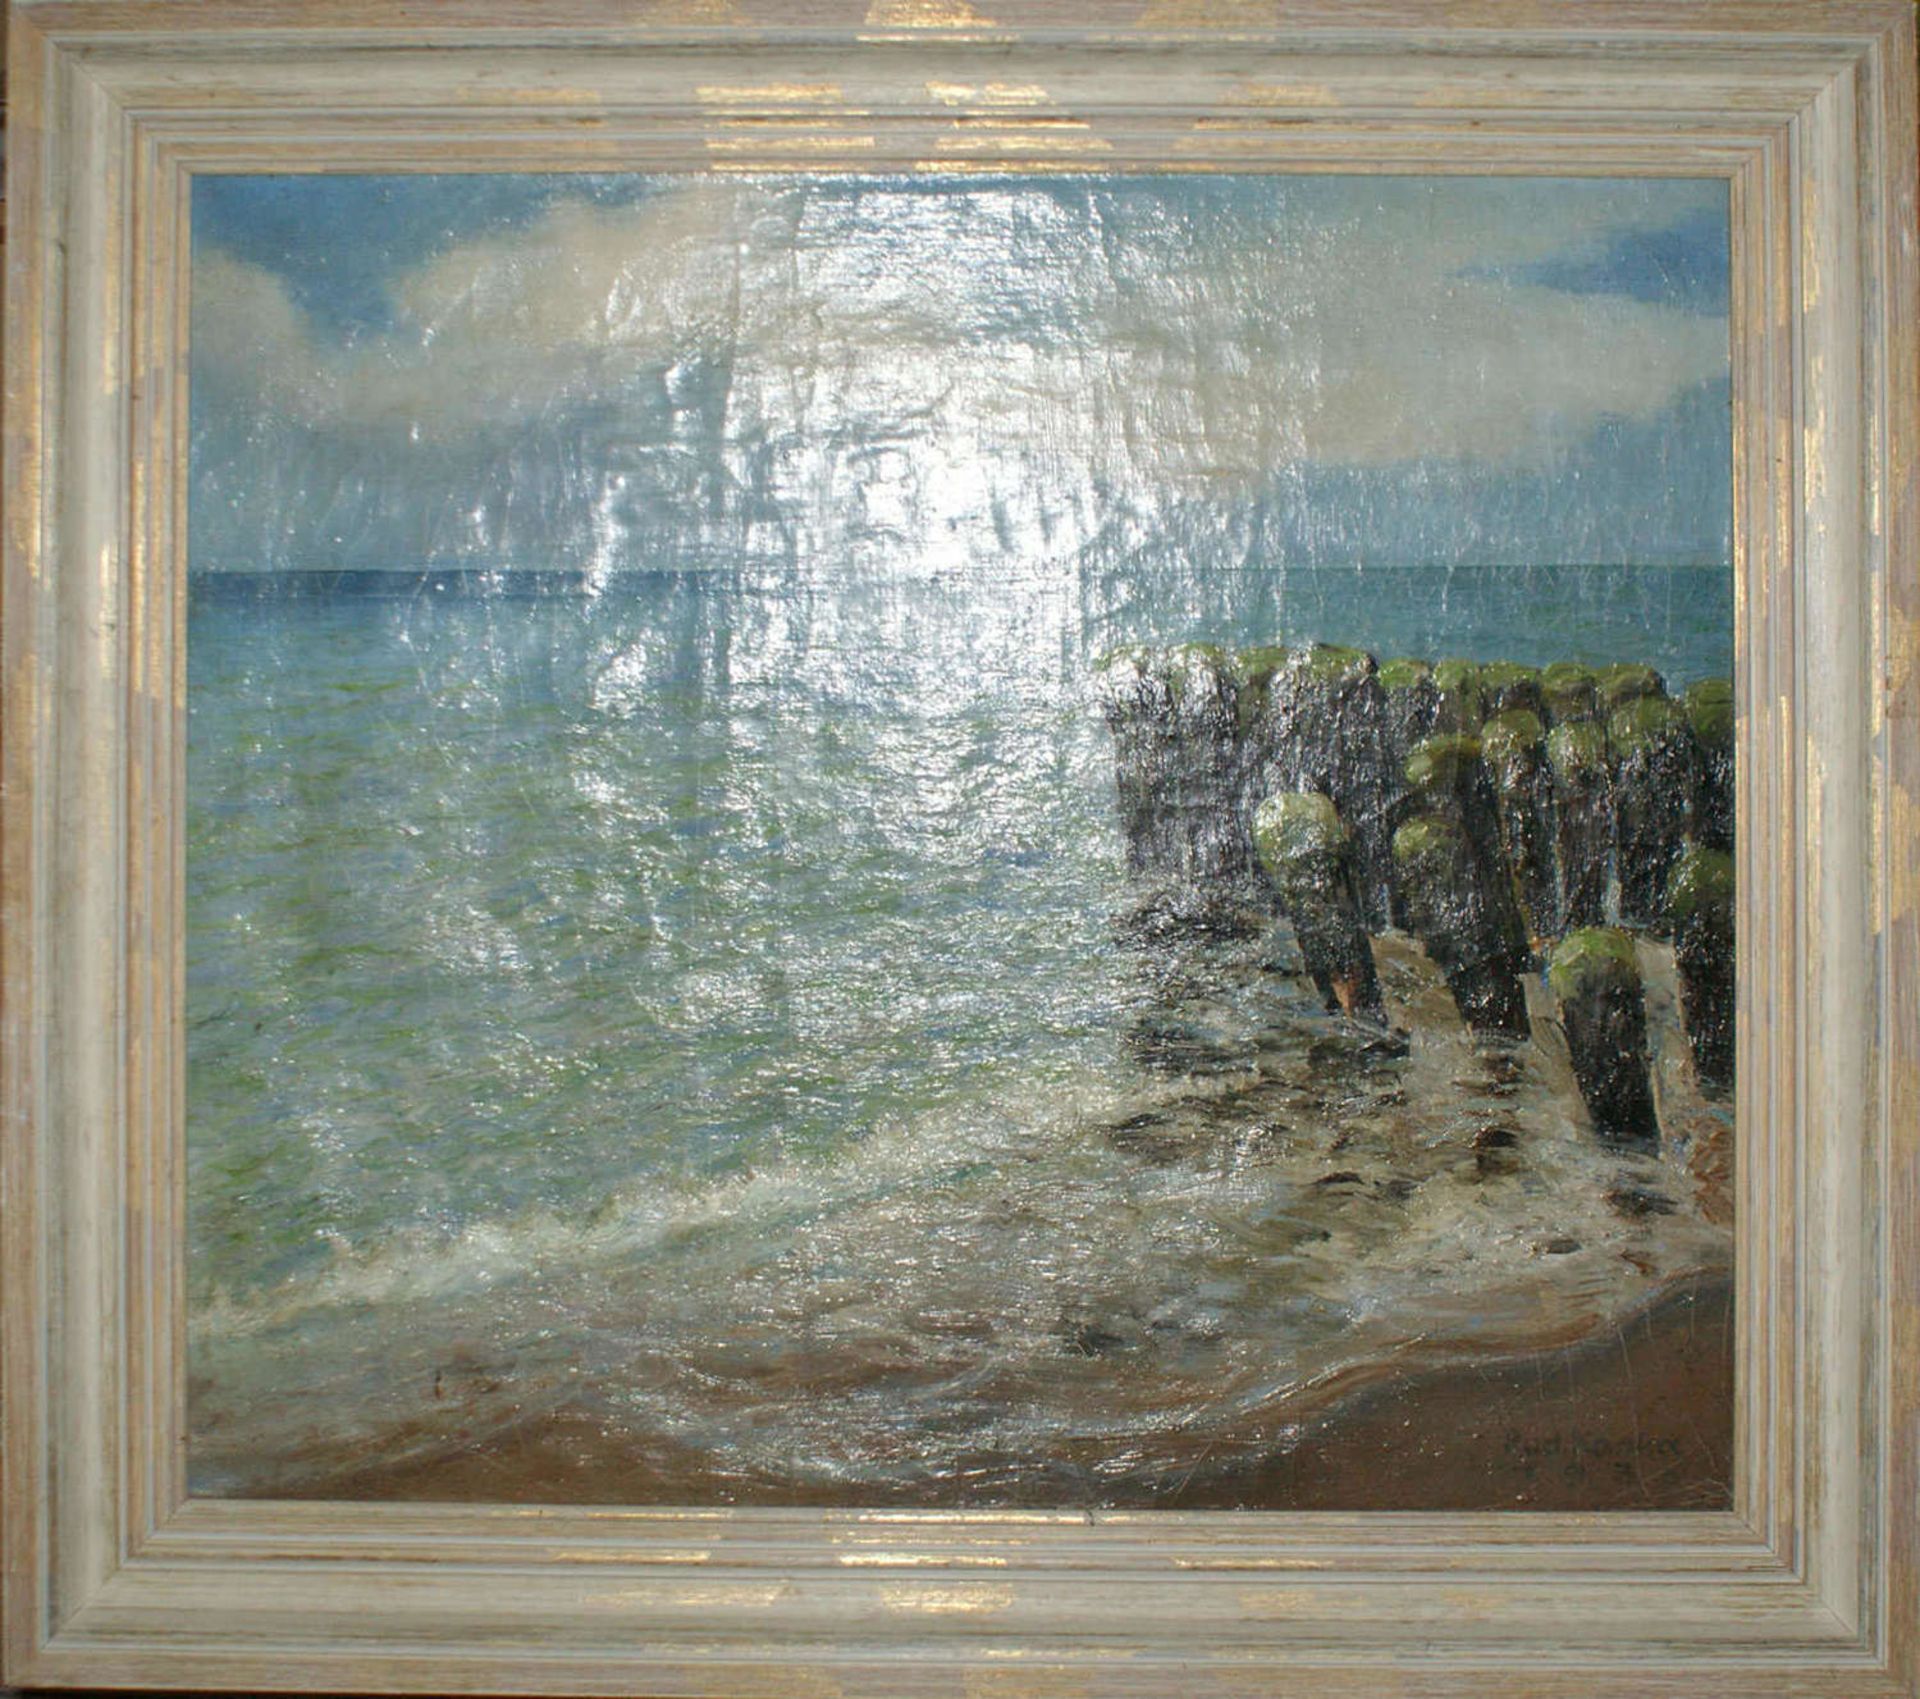 Rudolf Kanka (1899-1988), Ölgemälde auf Leinwand "Strand mit Planken", teilweise leichter